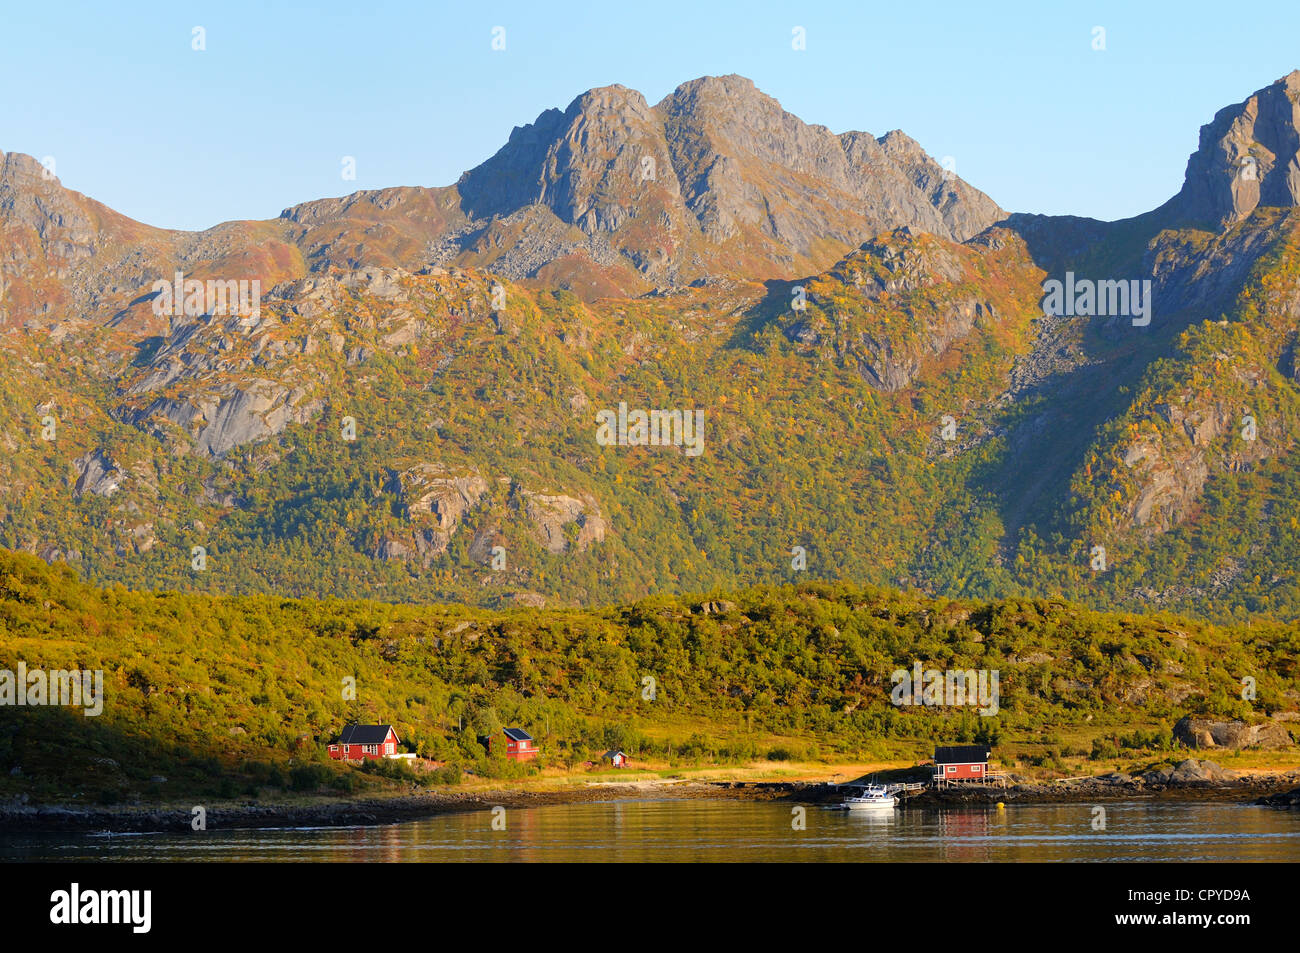 Norway, Nordland County, Raftsundet Strait separatig Austvagoy Island in Lofoten Islands of Hinnoya Island Stock Photo